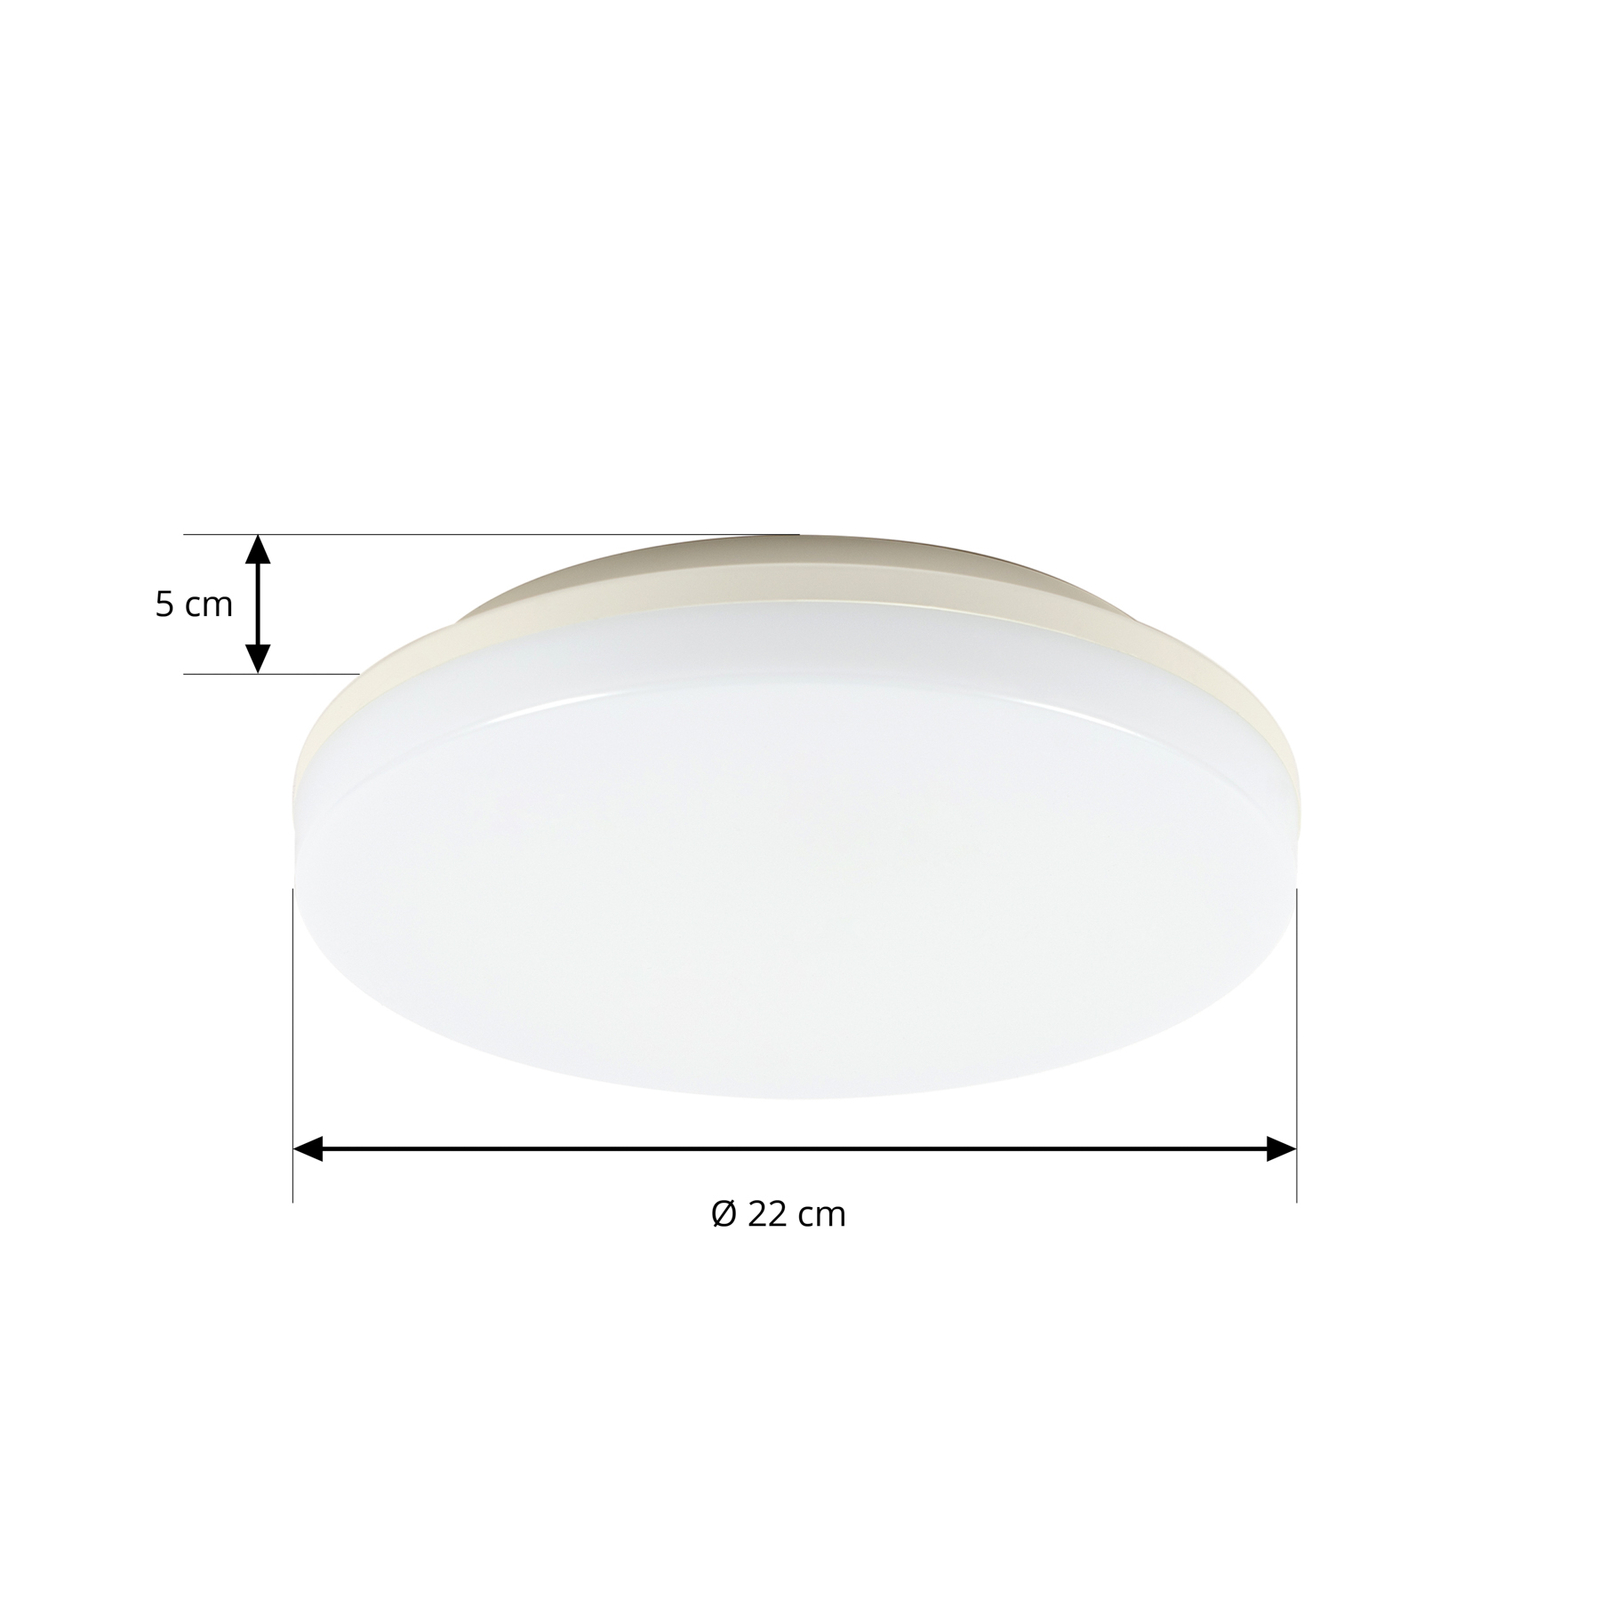 Prios Artin LED ceiling lamp, sensor, round, 22 cm